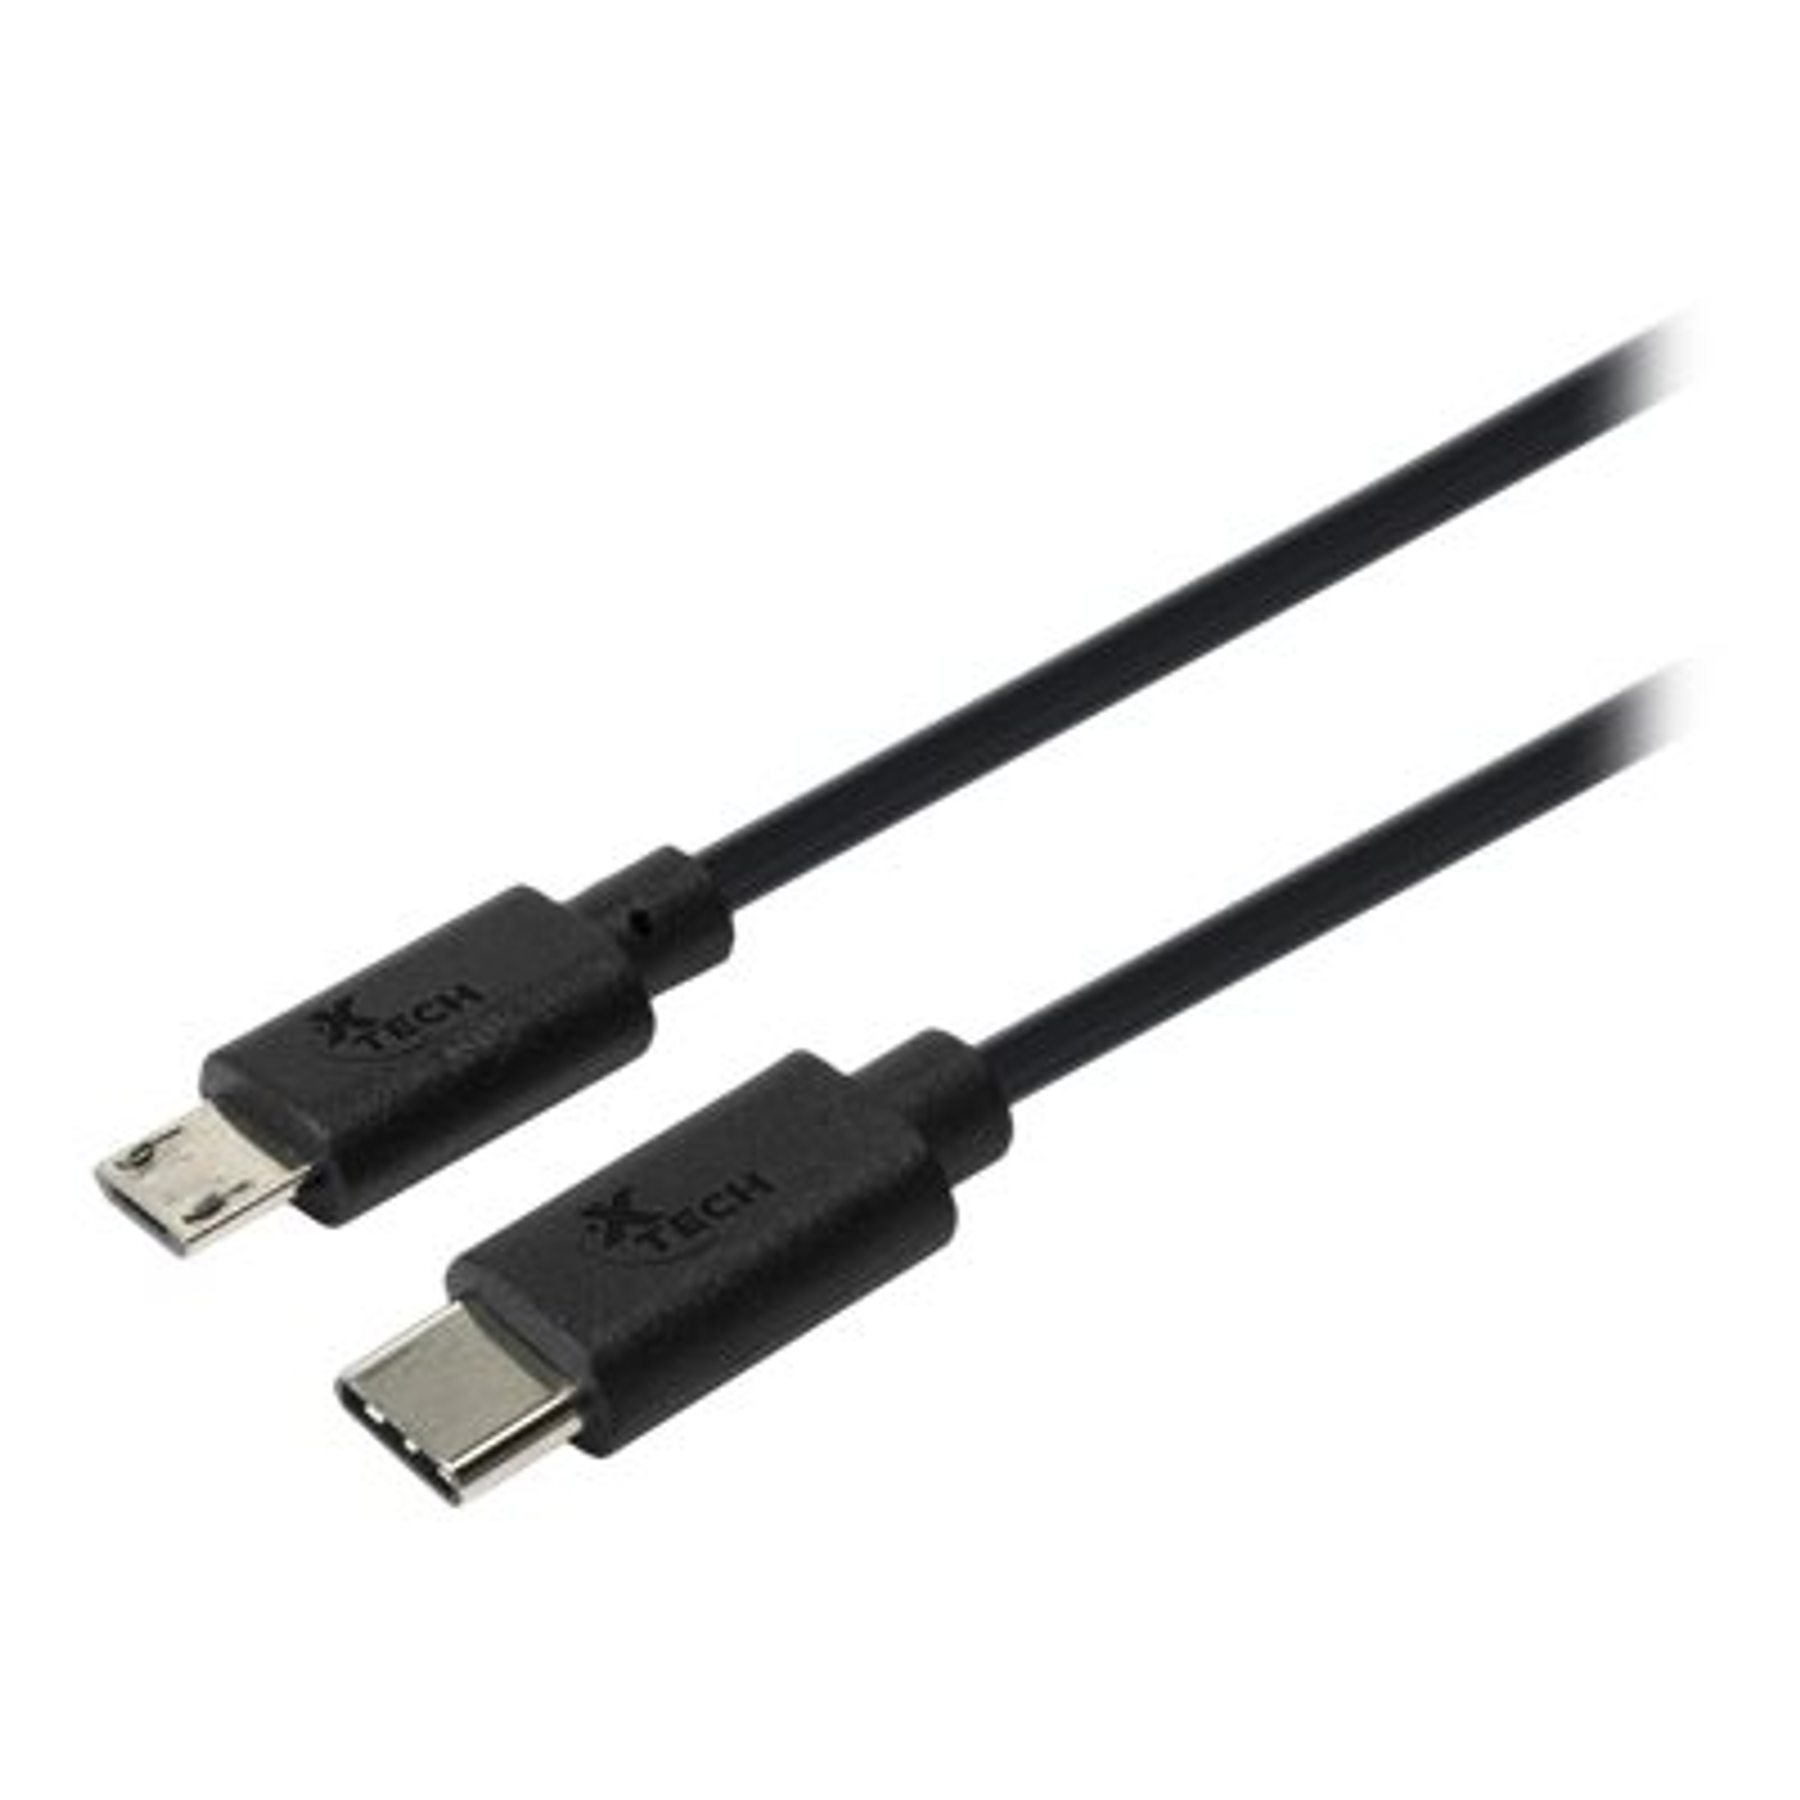  Xtech Cable Convertidor con Conector DisplayPort Macho a VGA Macho 1.8 Metros